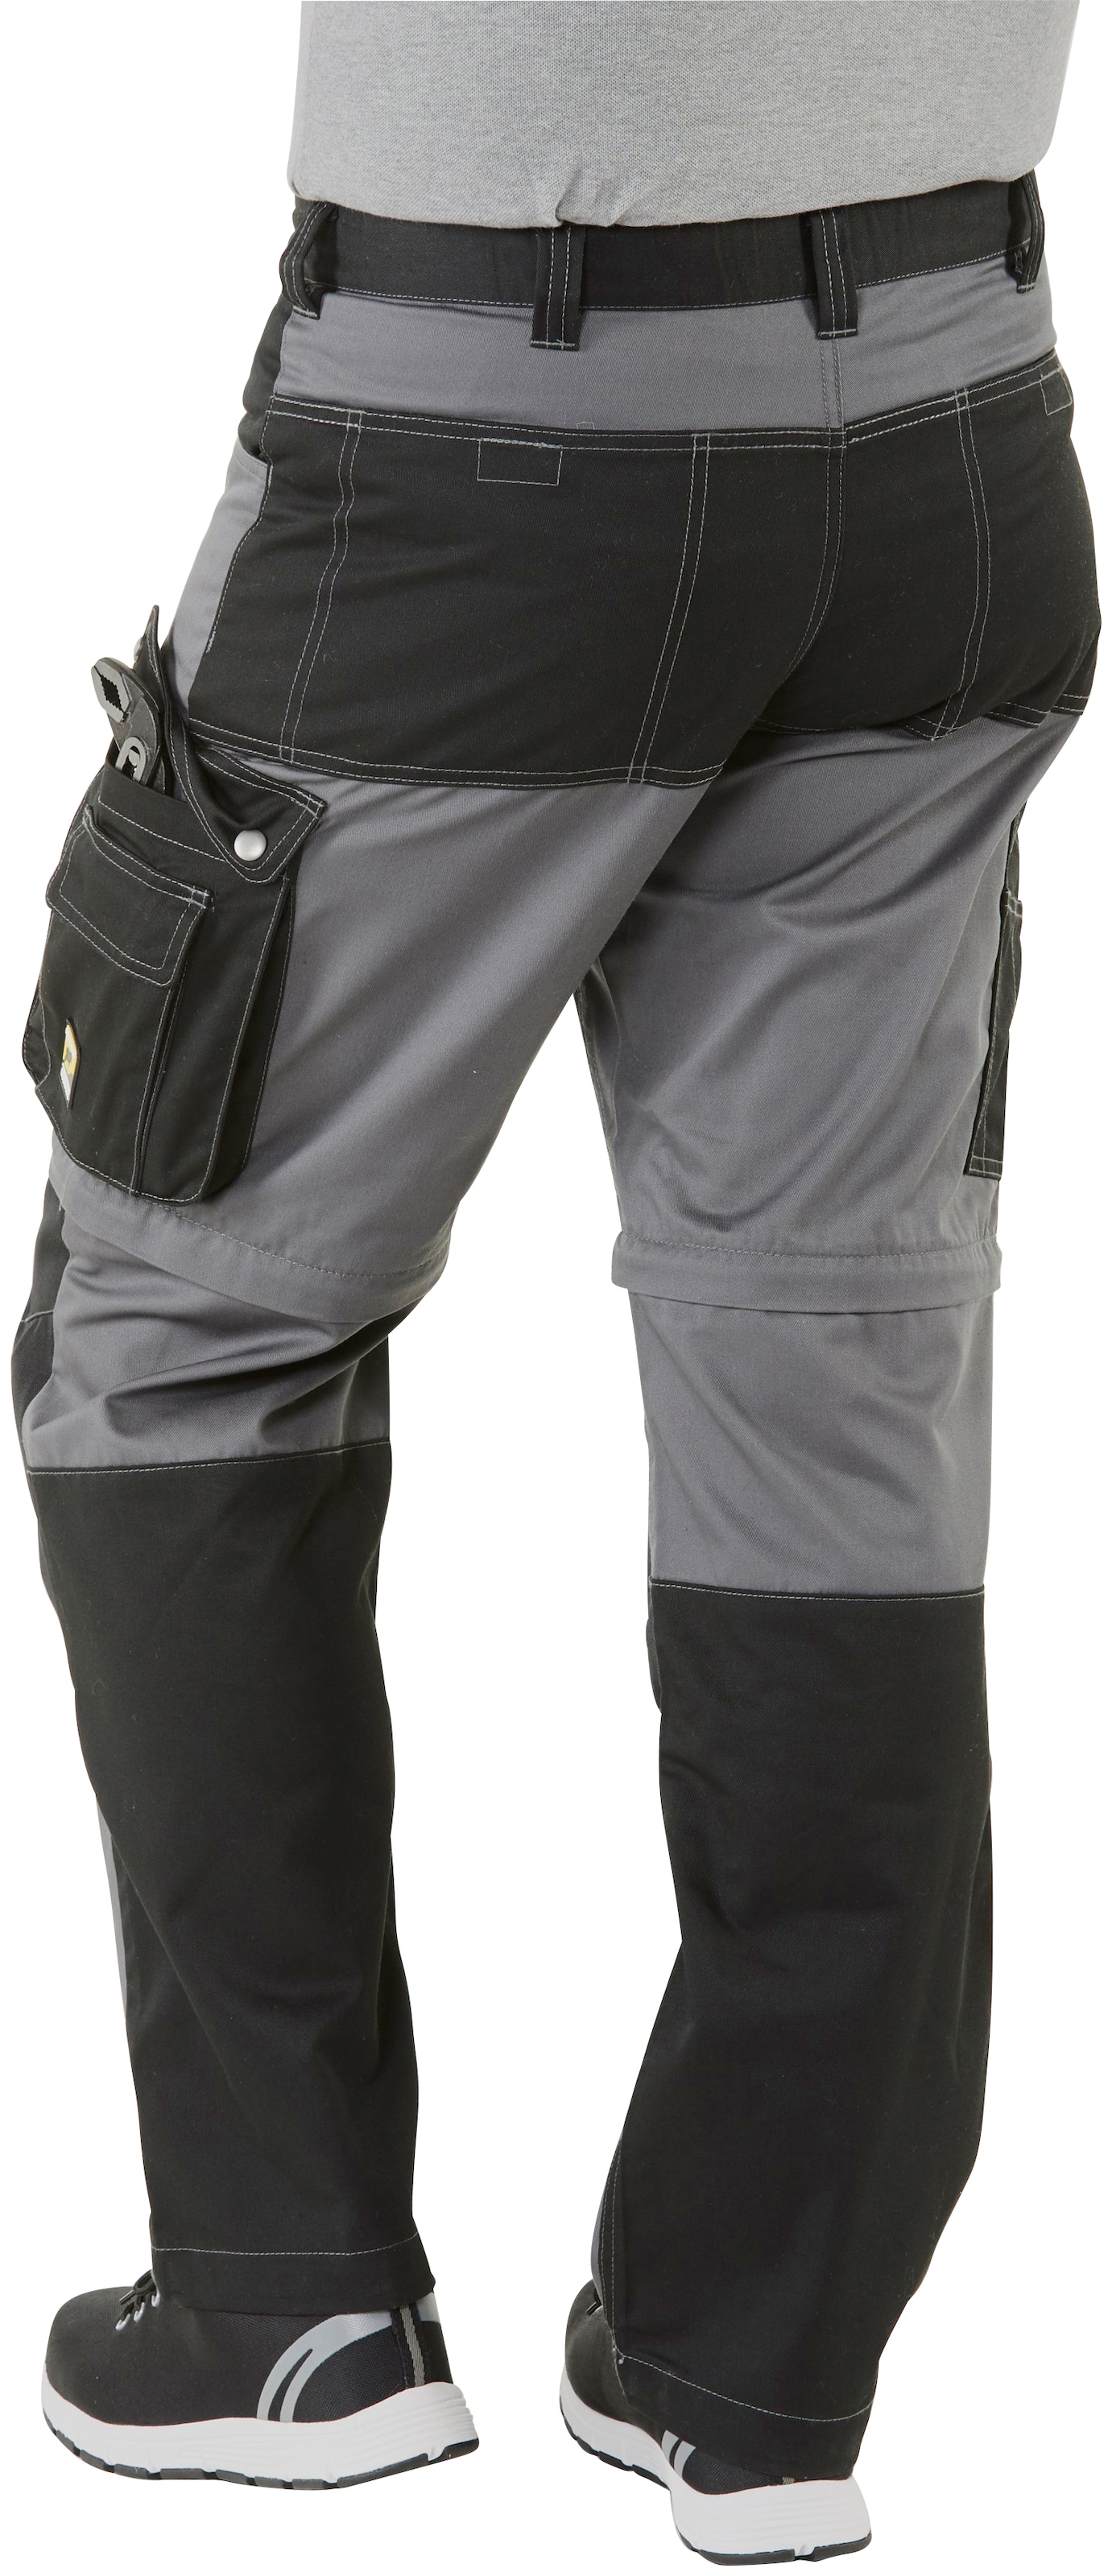 Northern Country Arbeitshose »Worker«, (verstärkter Kniebereich, Beinverlängerung  möglich, 8 Taschen), mit Zipp-off Funktion: Shorts und lange Arbeitshose in  einem online bestellen bei OTTO